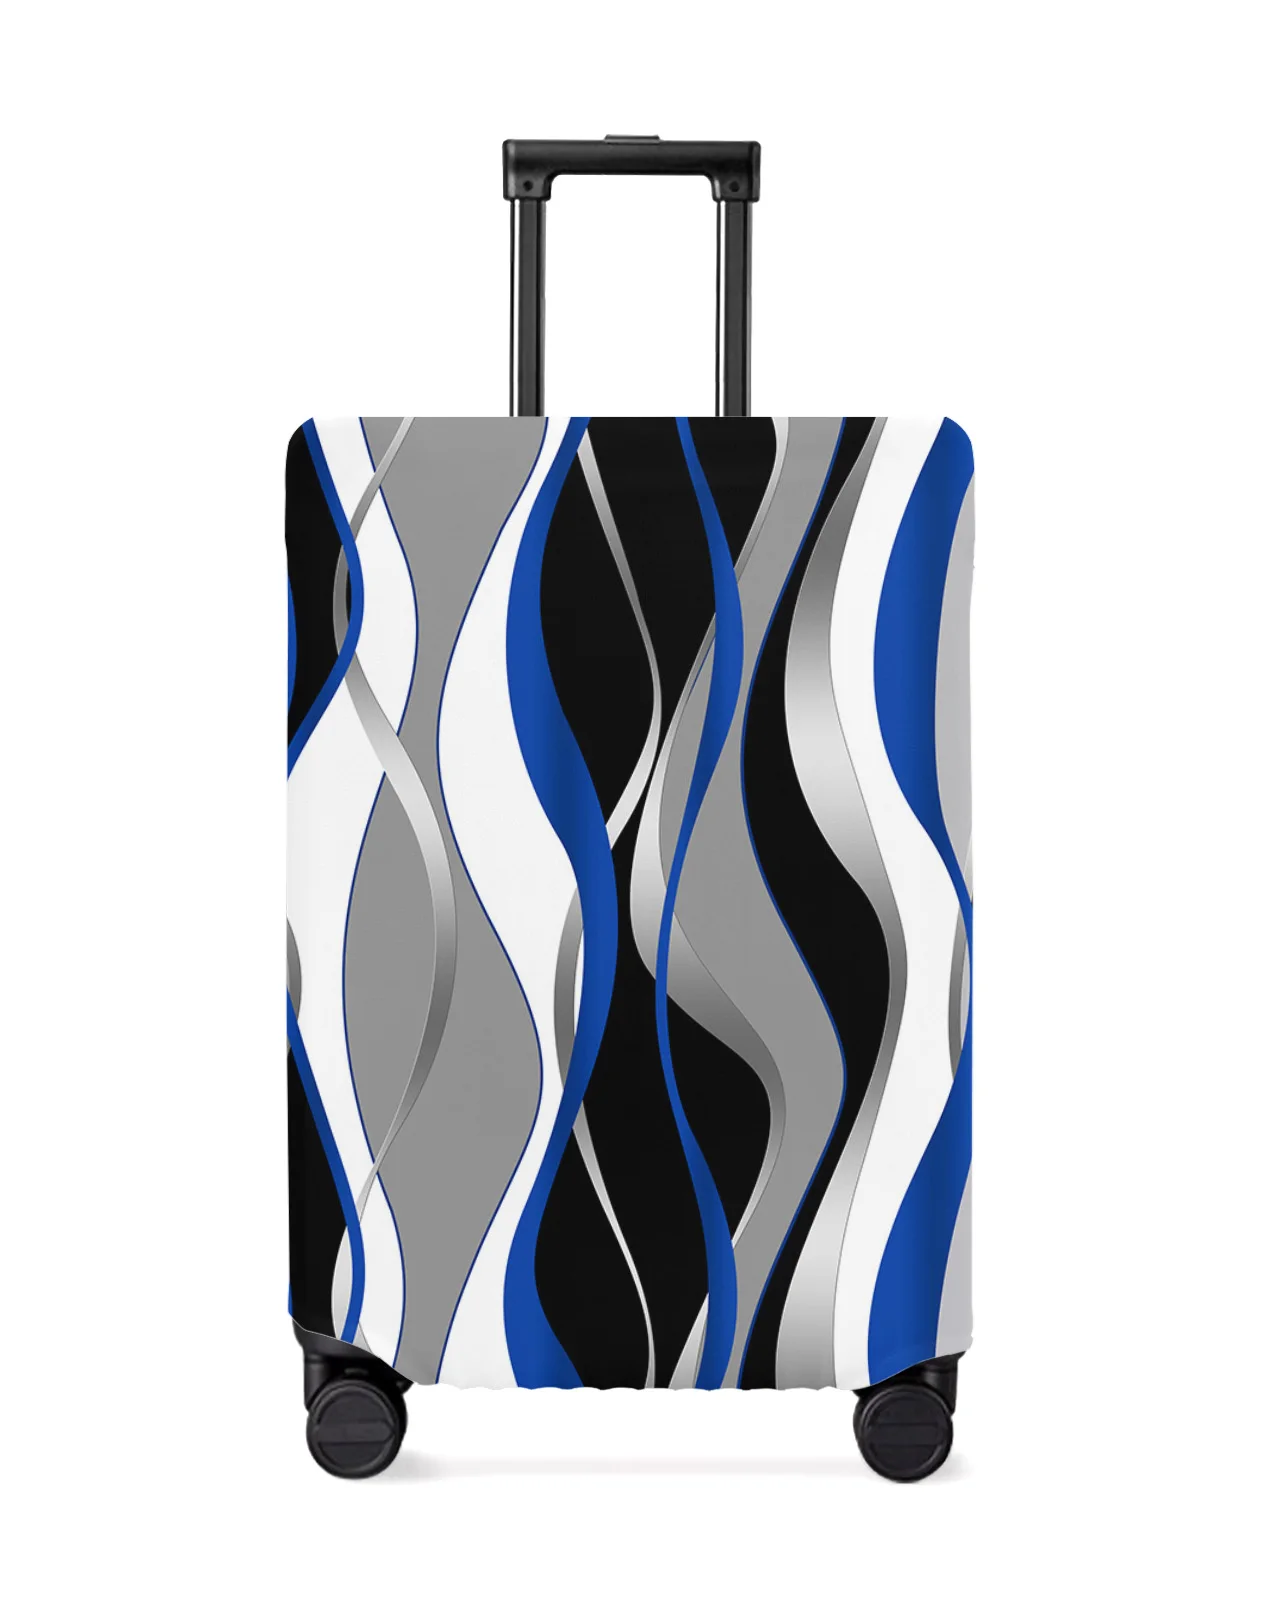 funda-elastica-para-equipaje-de-viaje-cubierta-antipolvo-de-linea-abstracta-geometrica-azul-y-negro-accesorios-de-viaje